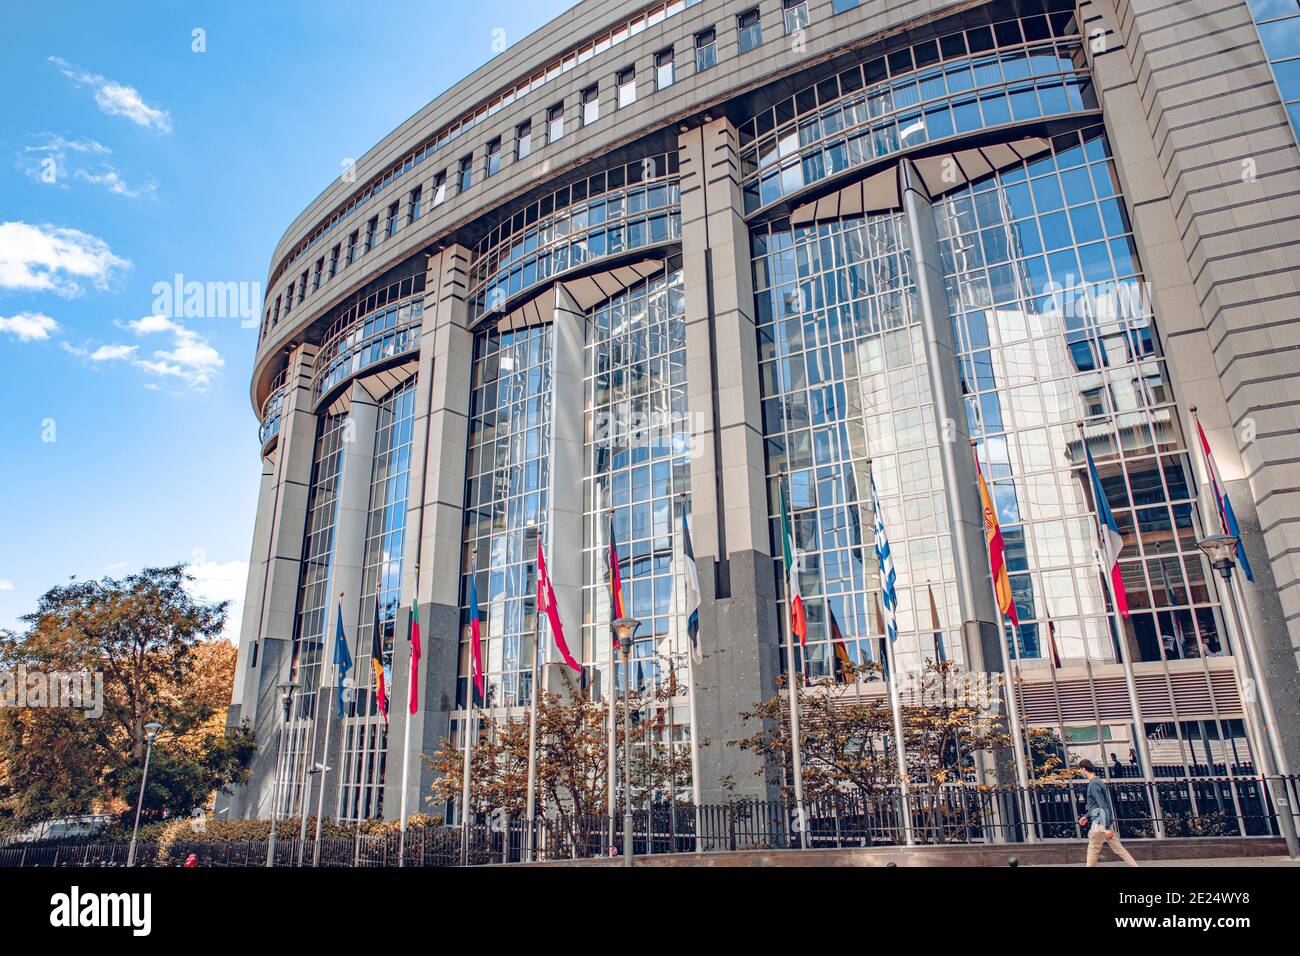 Bruxelles, Belgique - 20 juillet 2020 : le Parlement européen, siège de la démocratie européenne Banque D'Images